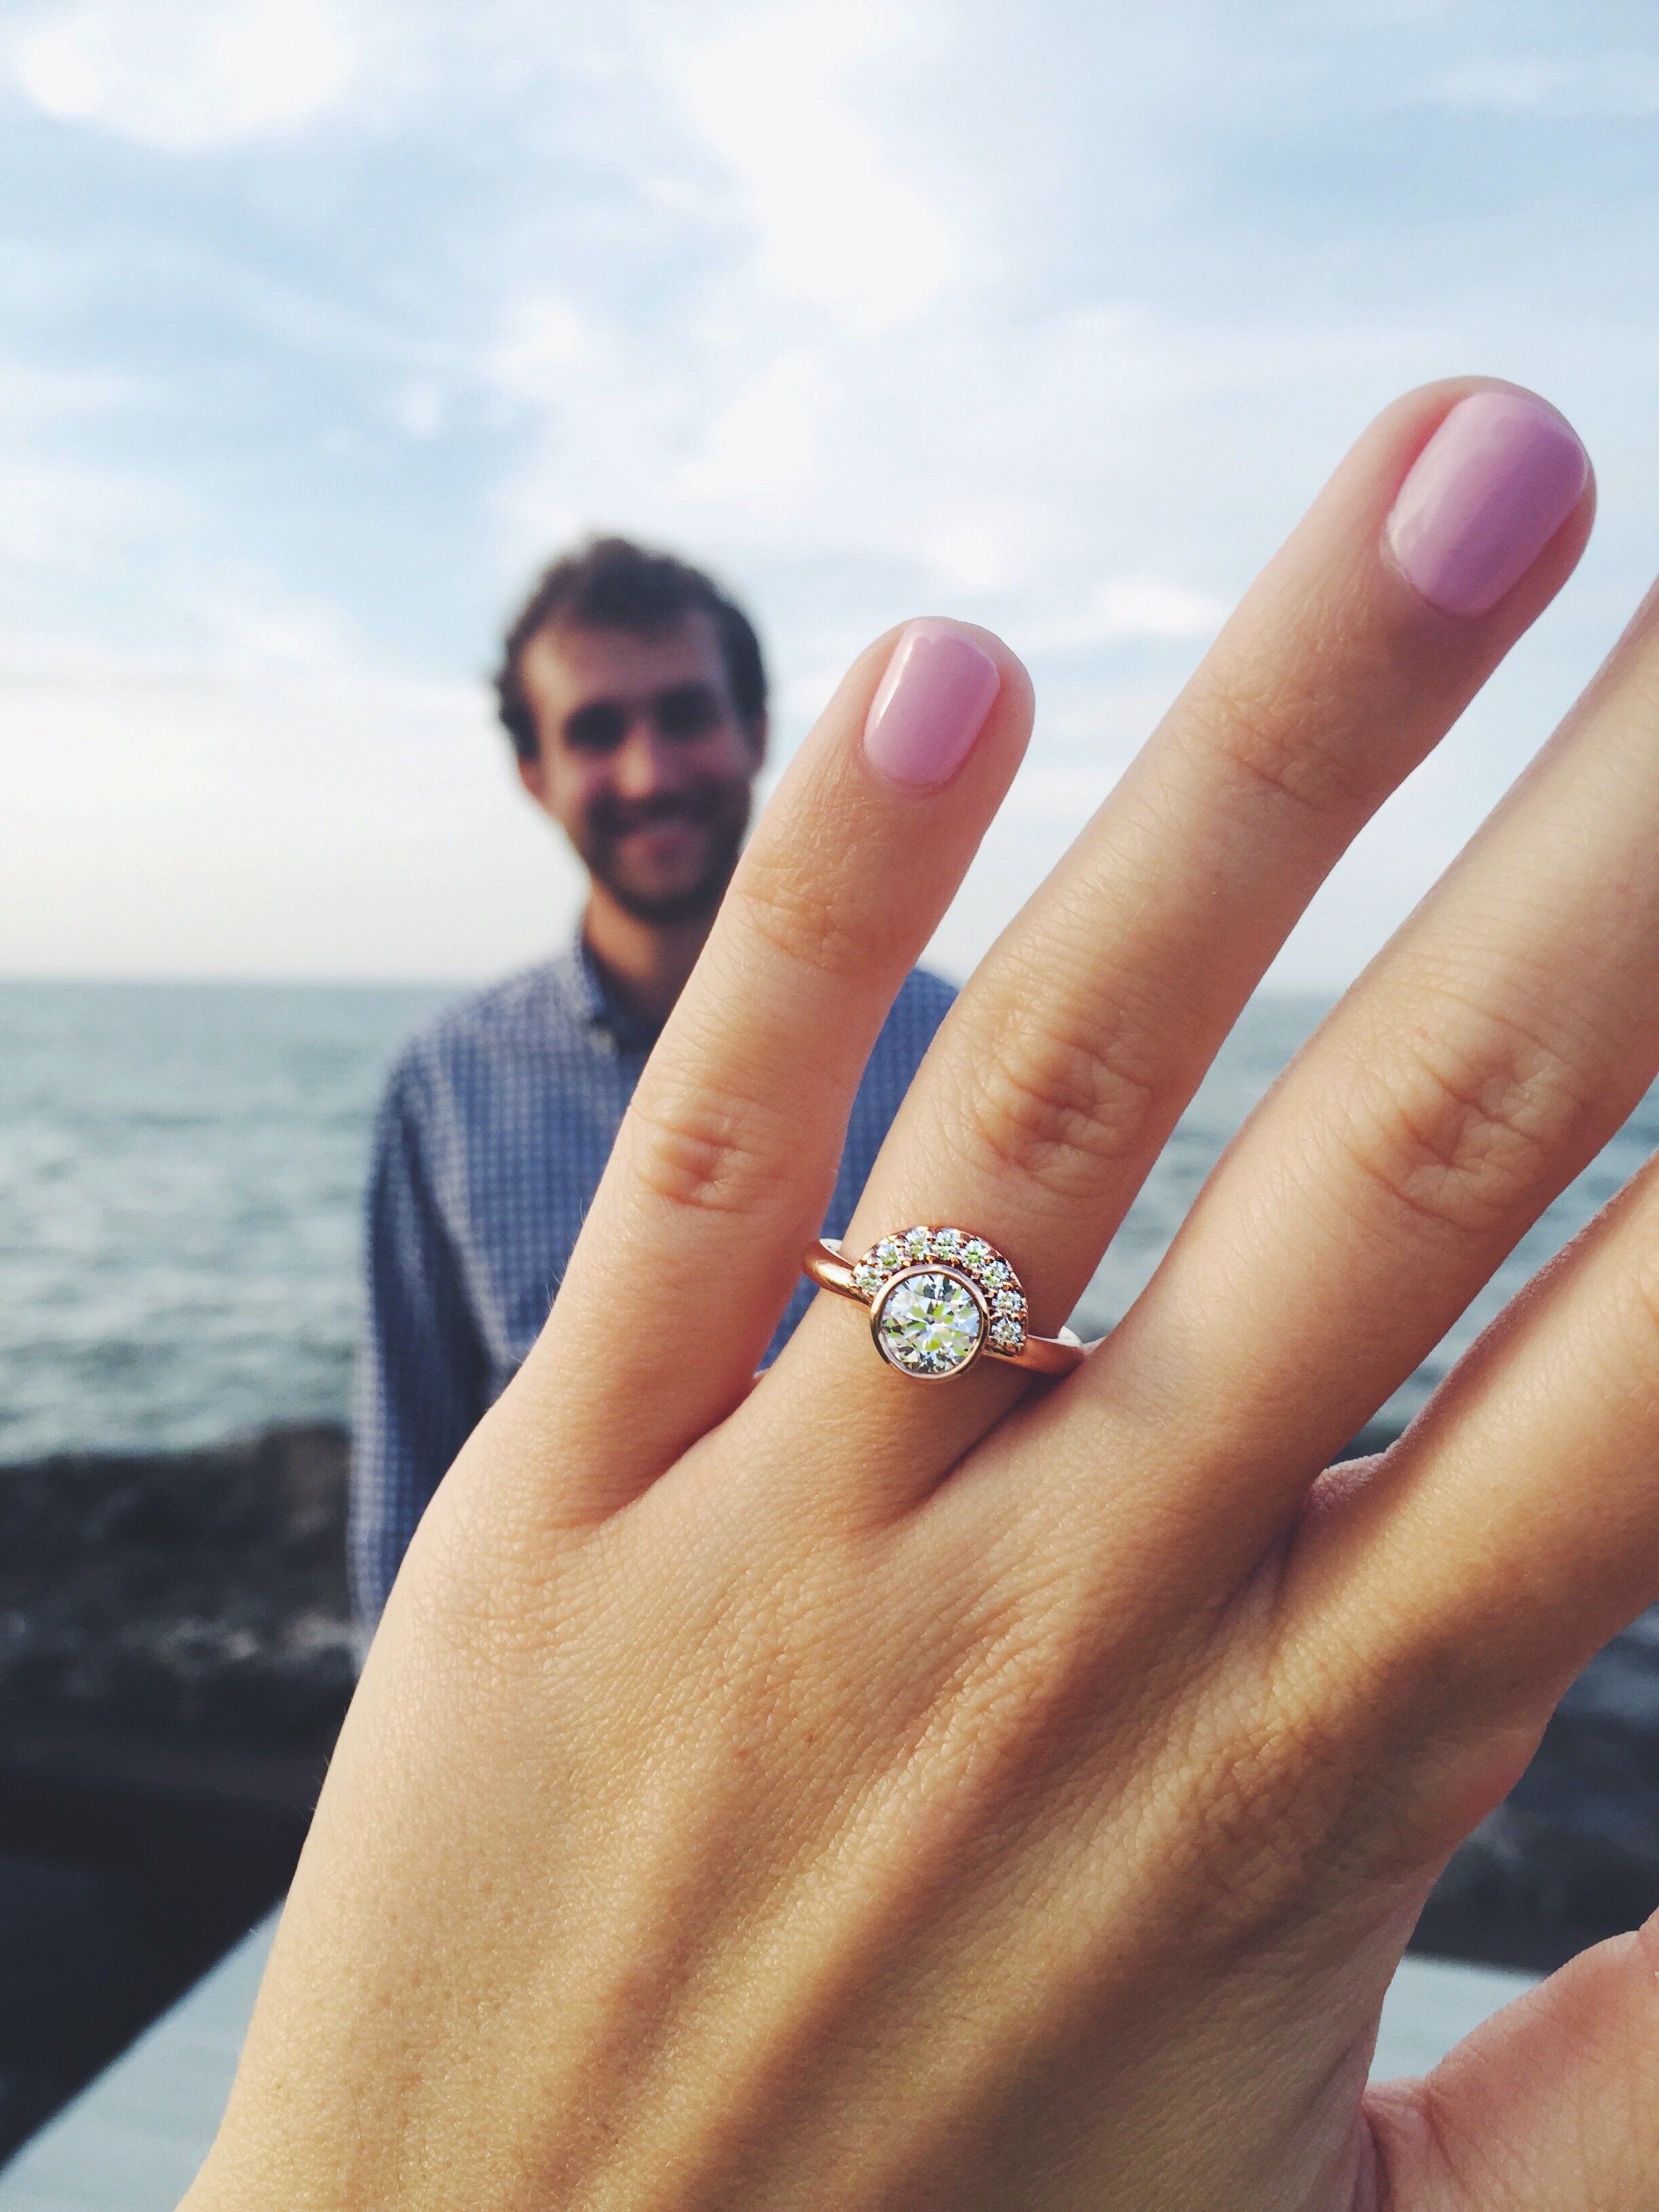 Обручальное кольцо на пальце фото девушки